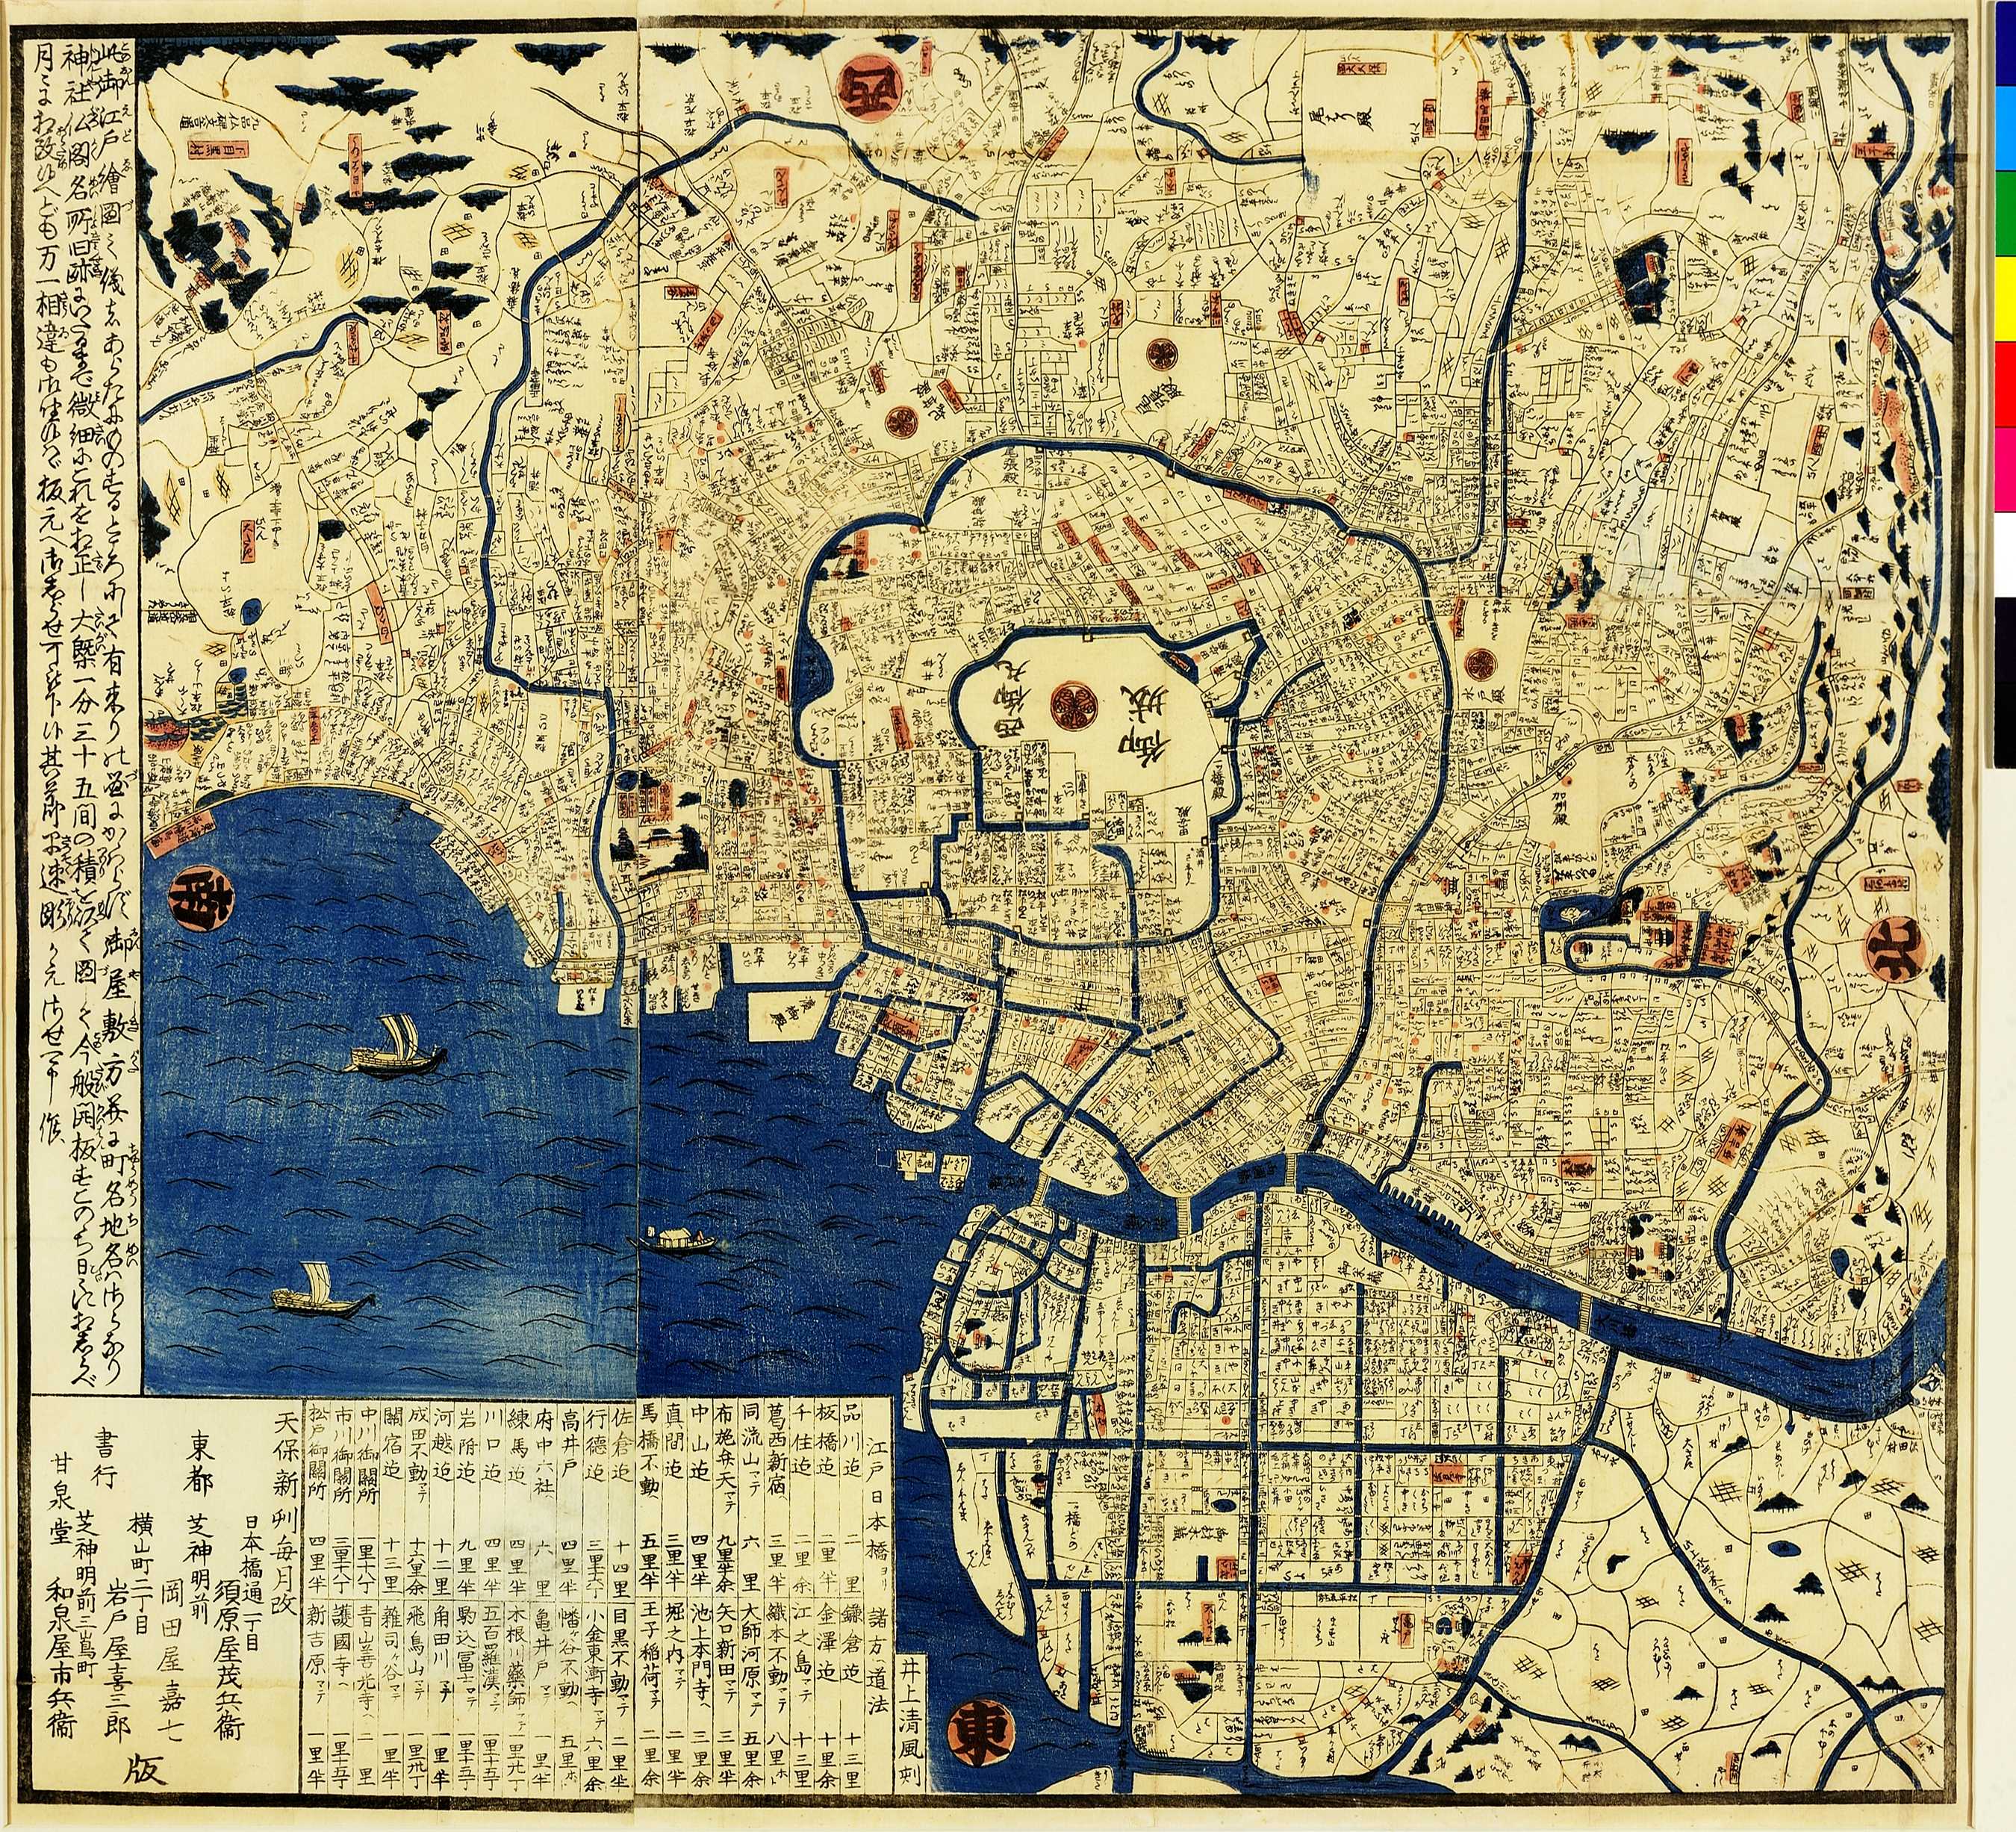 02.02 御江戸絵図 (Illustrated Map of Edo)